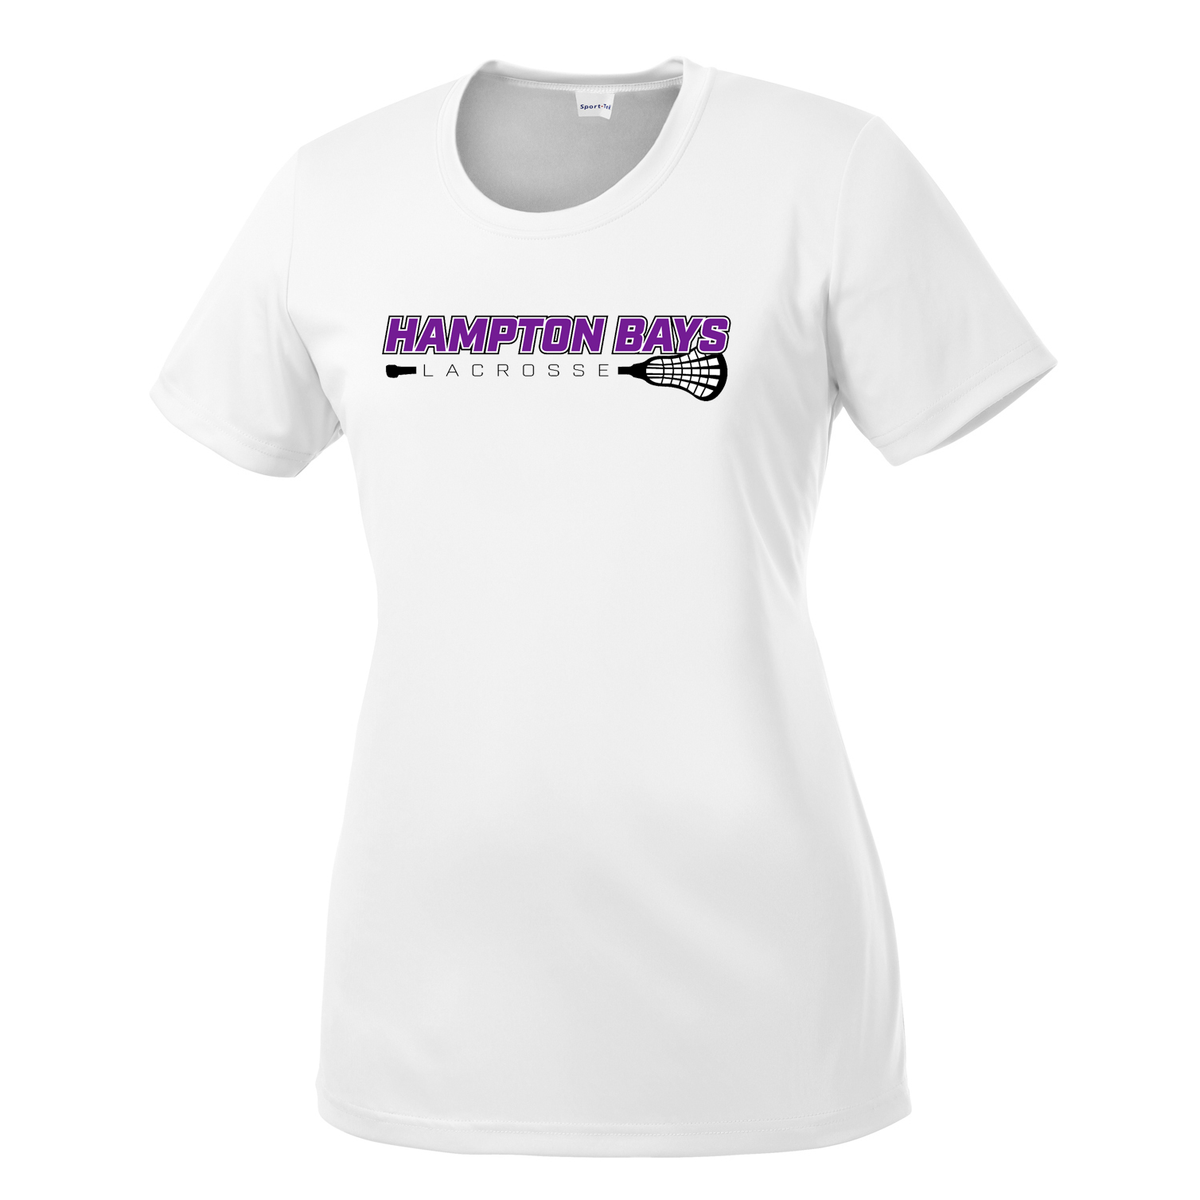 Hampton Bays Lacrosse Women's Performance Tee